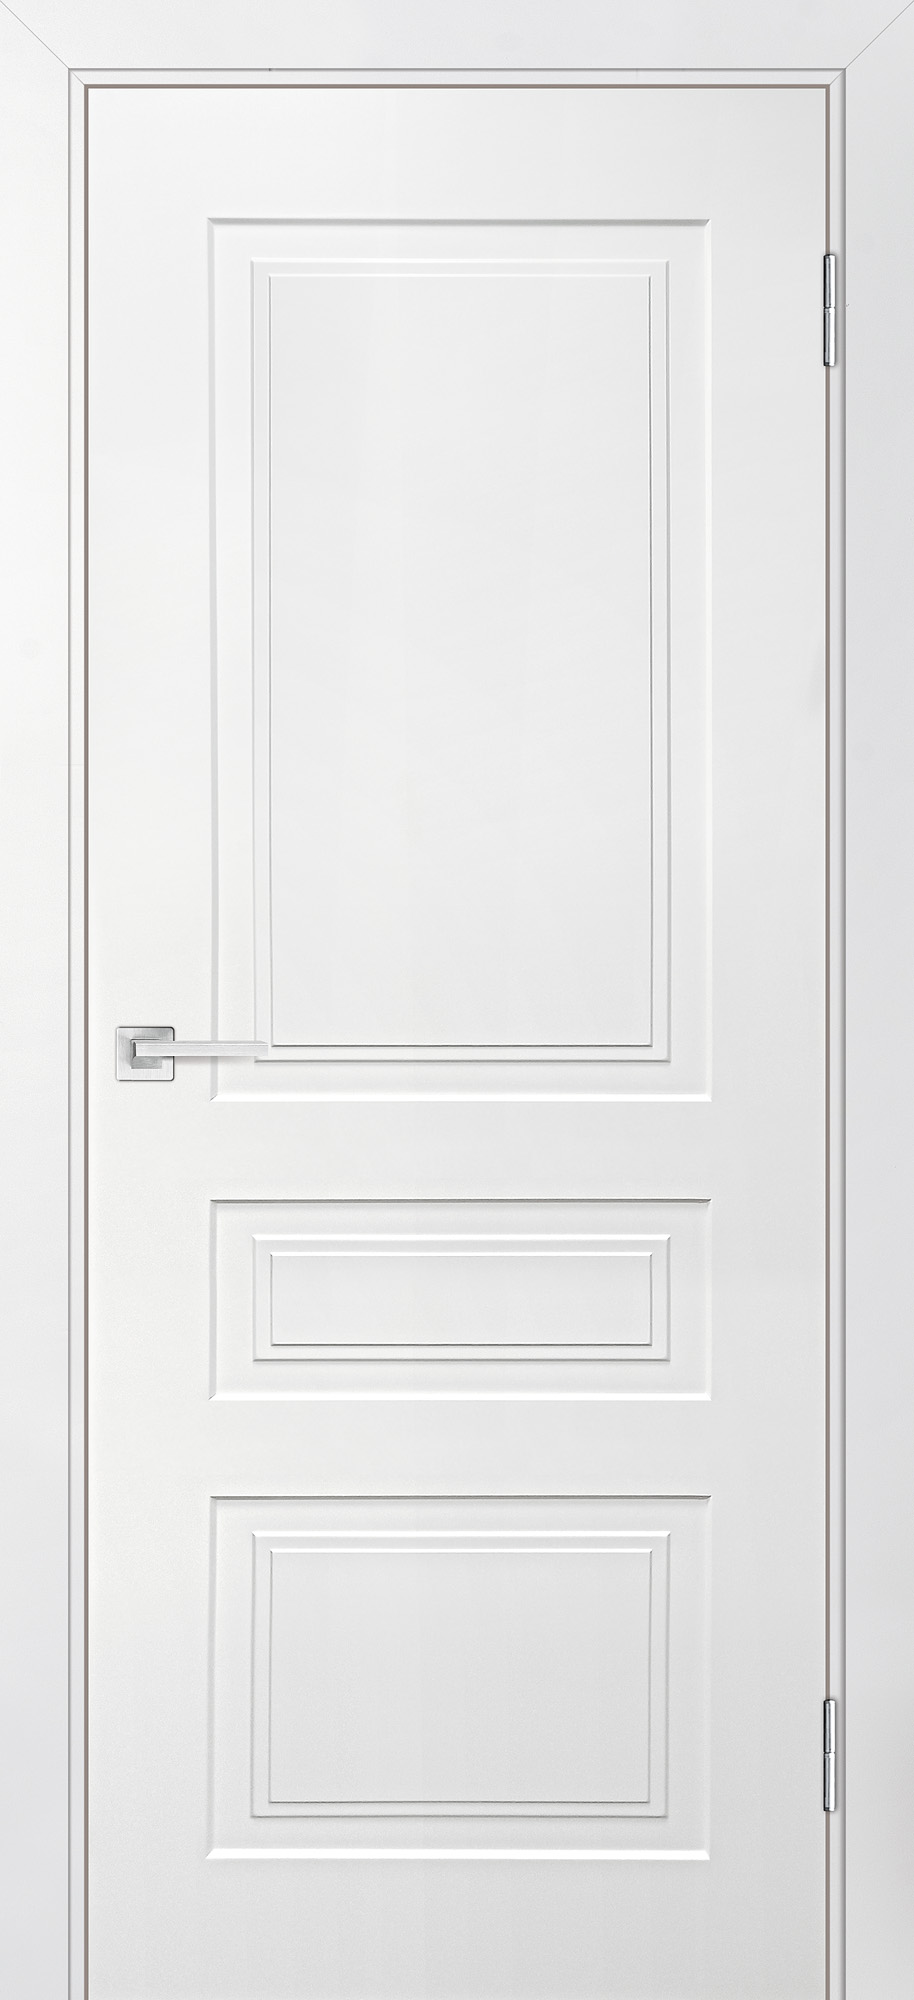 Двери крашеные (Эмаль) ТЕКОНА Смальта-Лайн 05 глухое Белый ral 9003 размер 200 х 60 см. артикул F0000093241